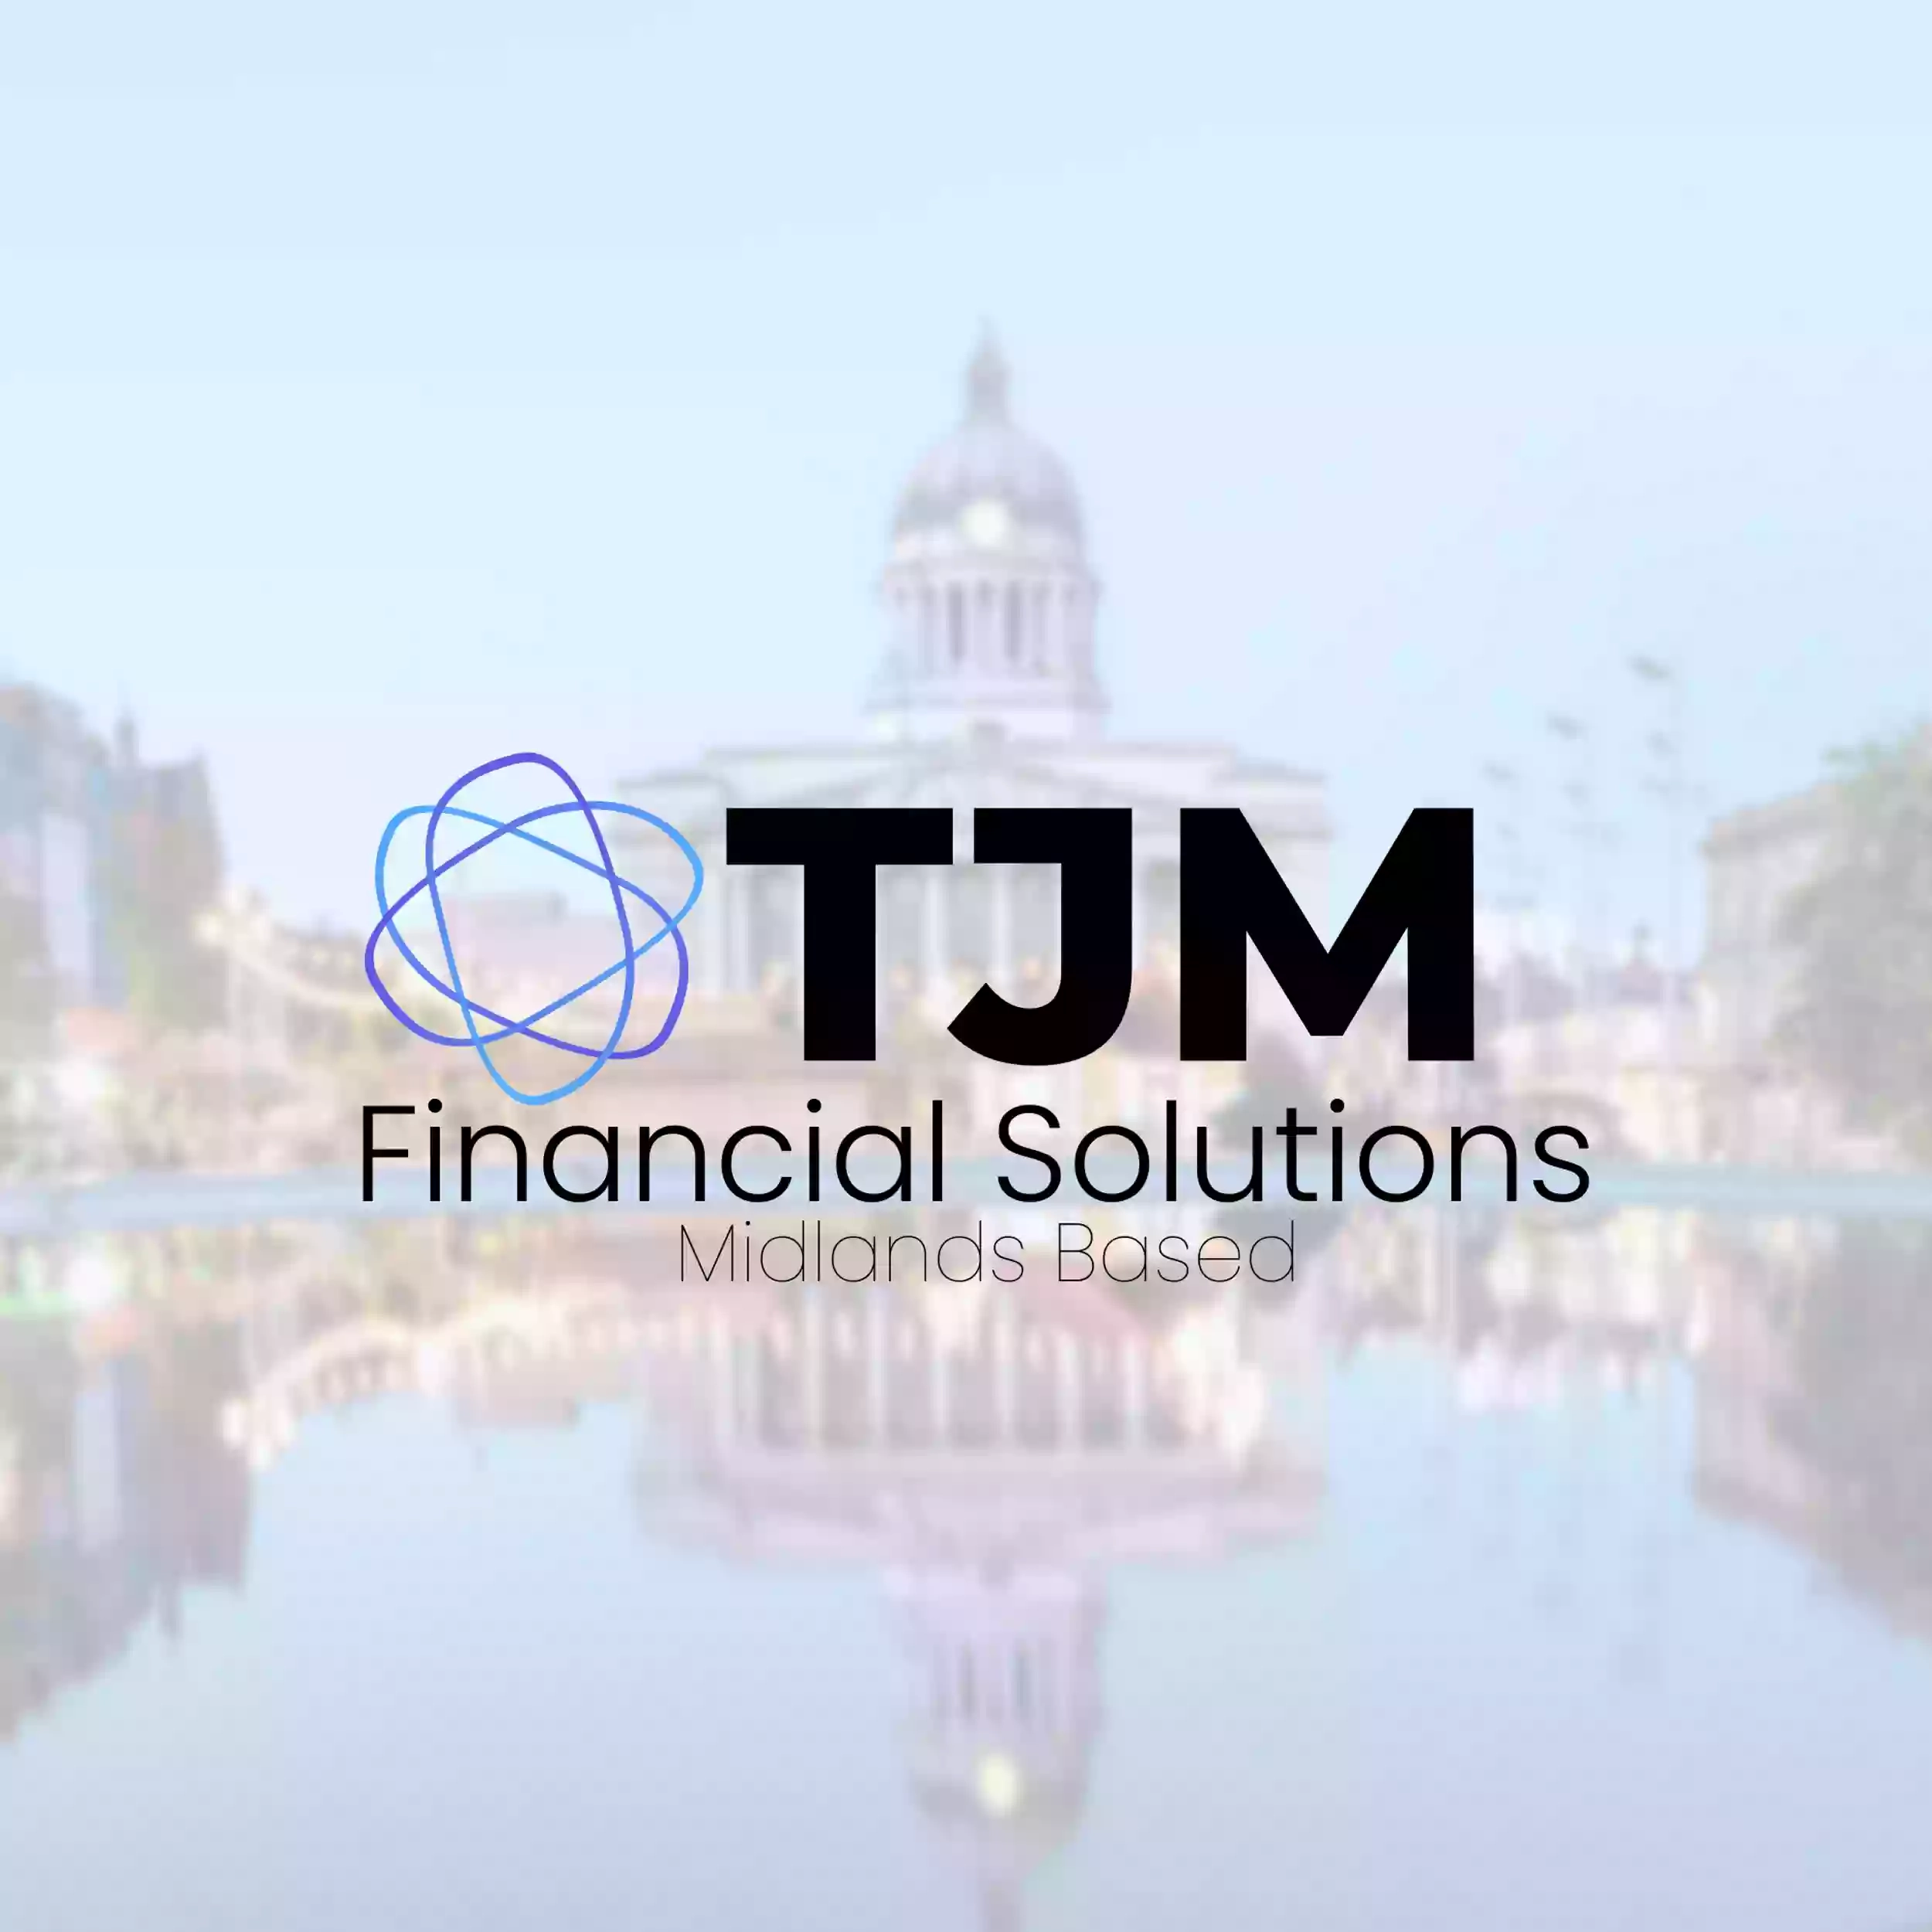 TJM Financial Solutions